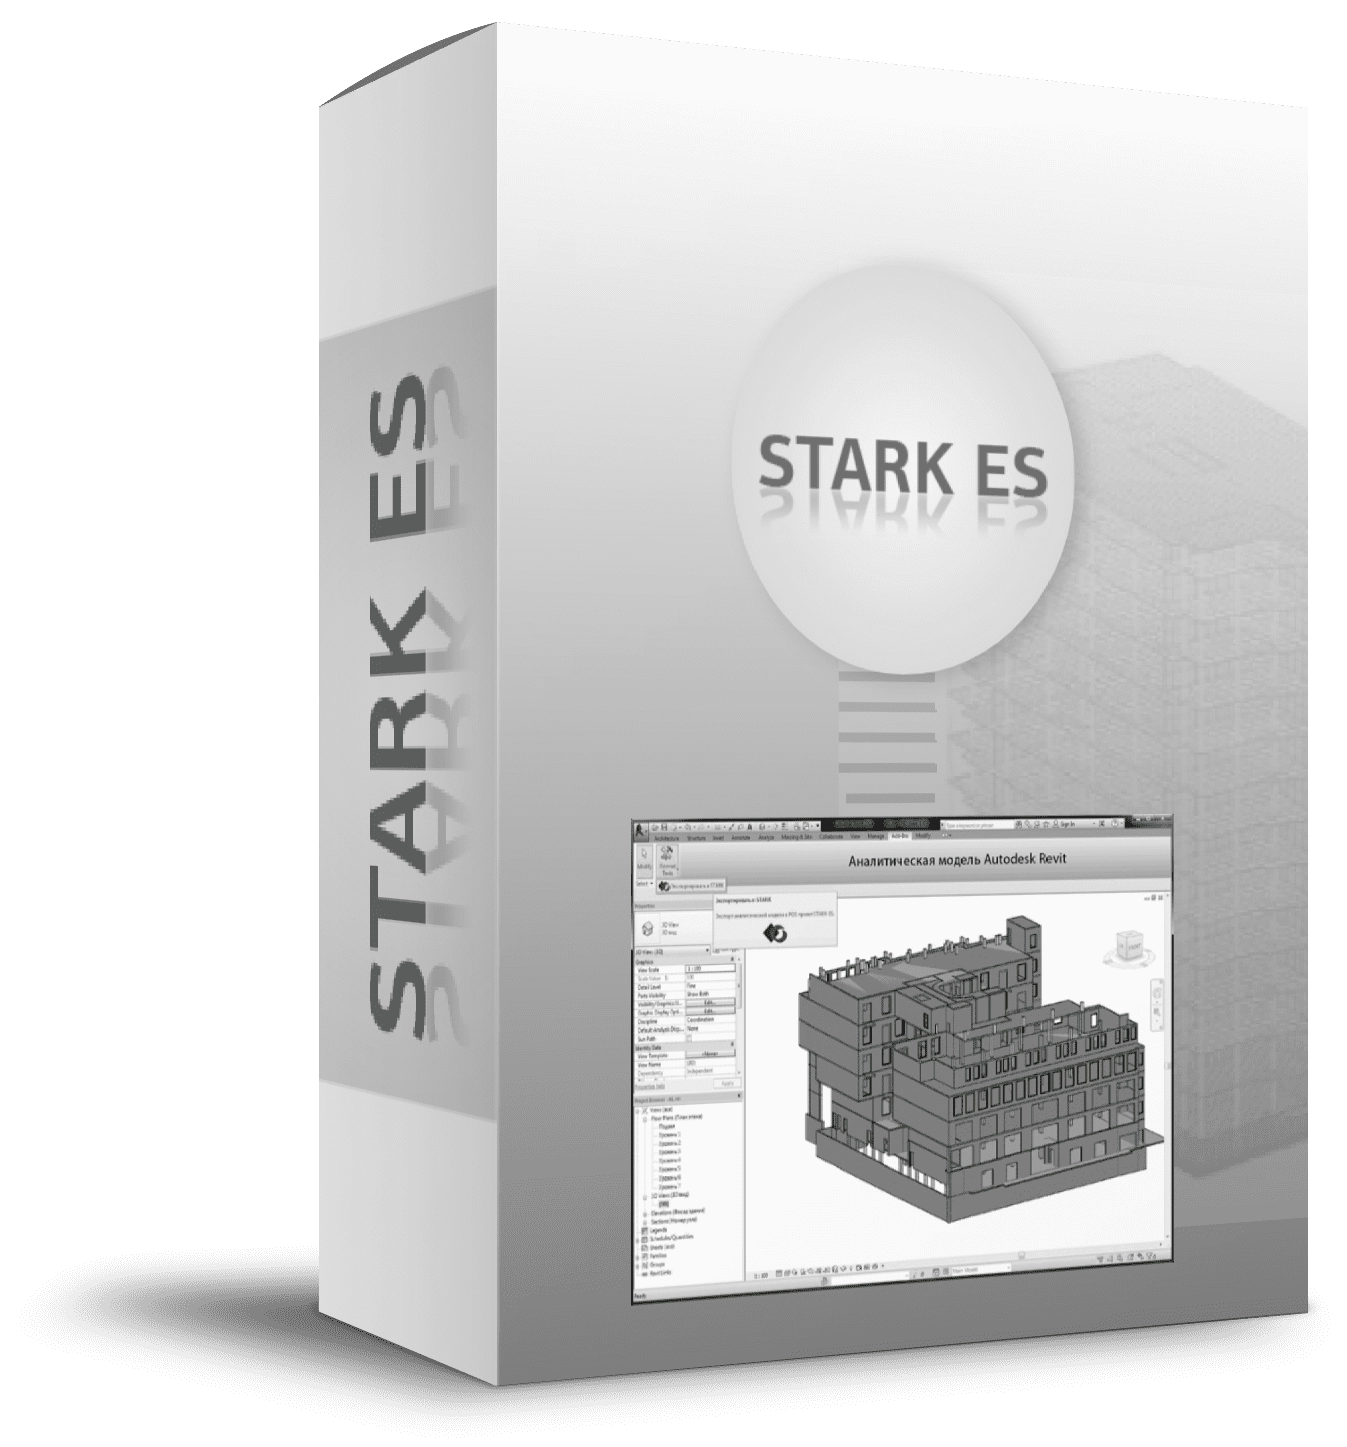 STARK ES-box